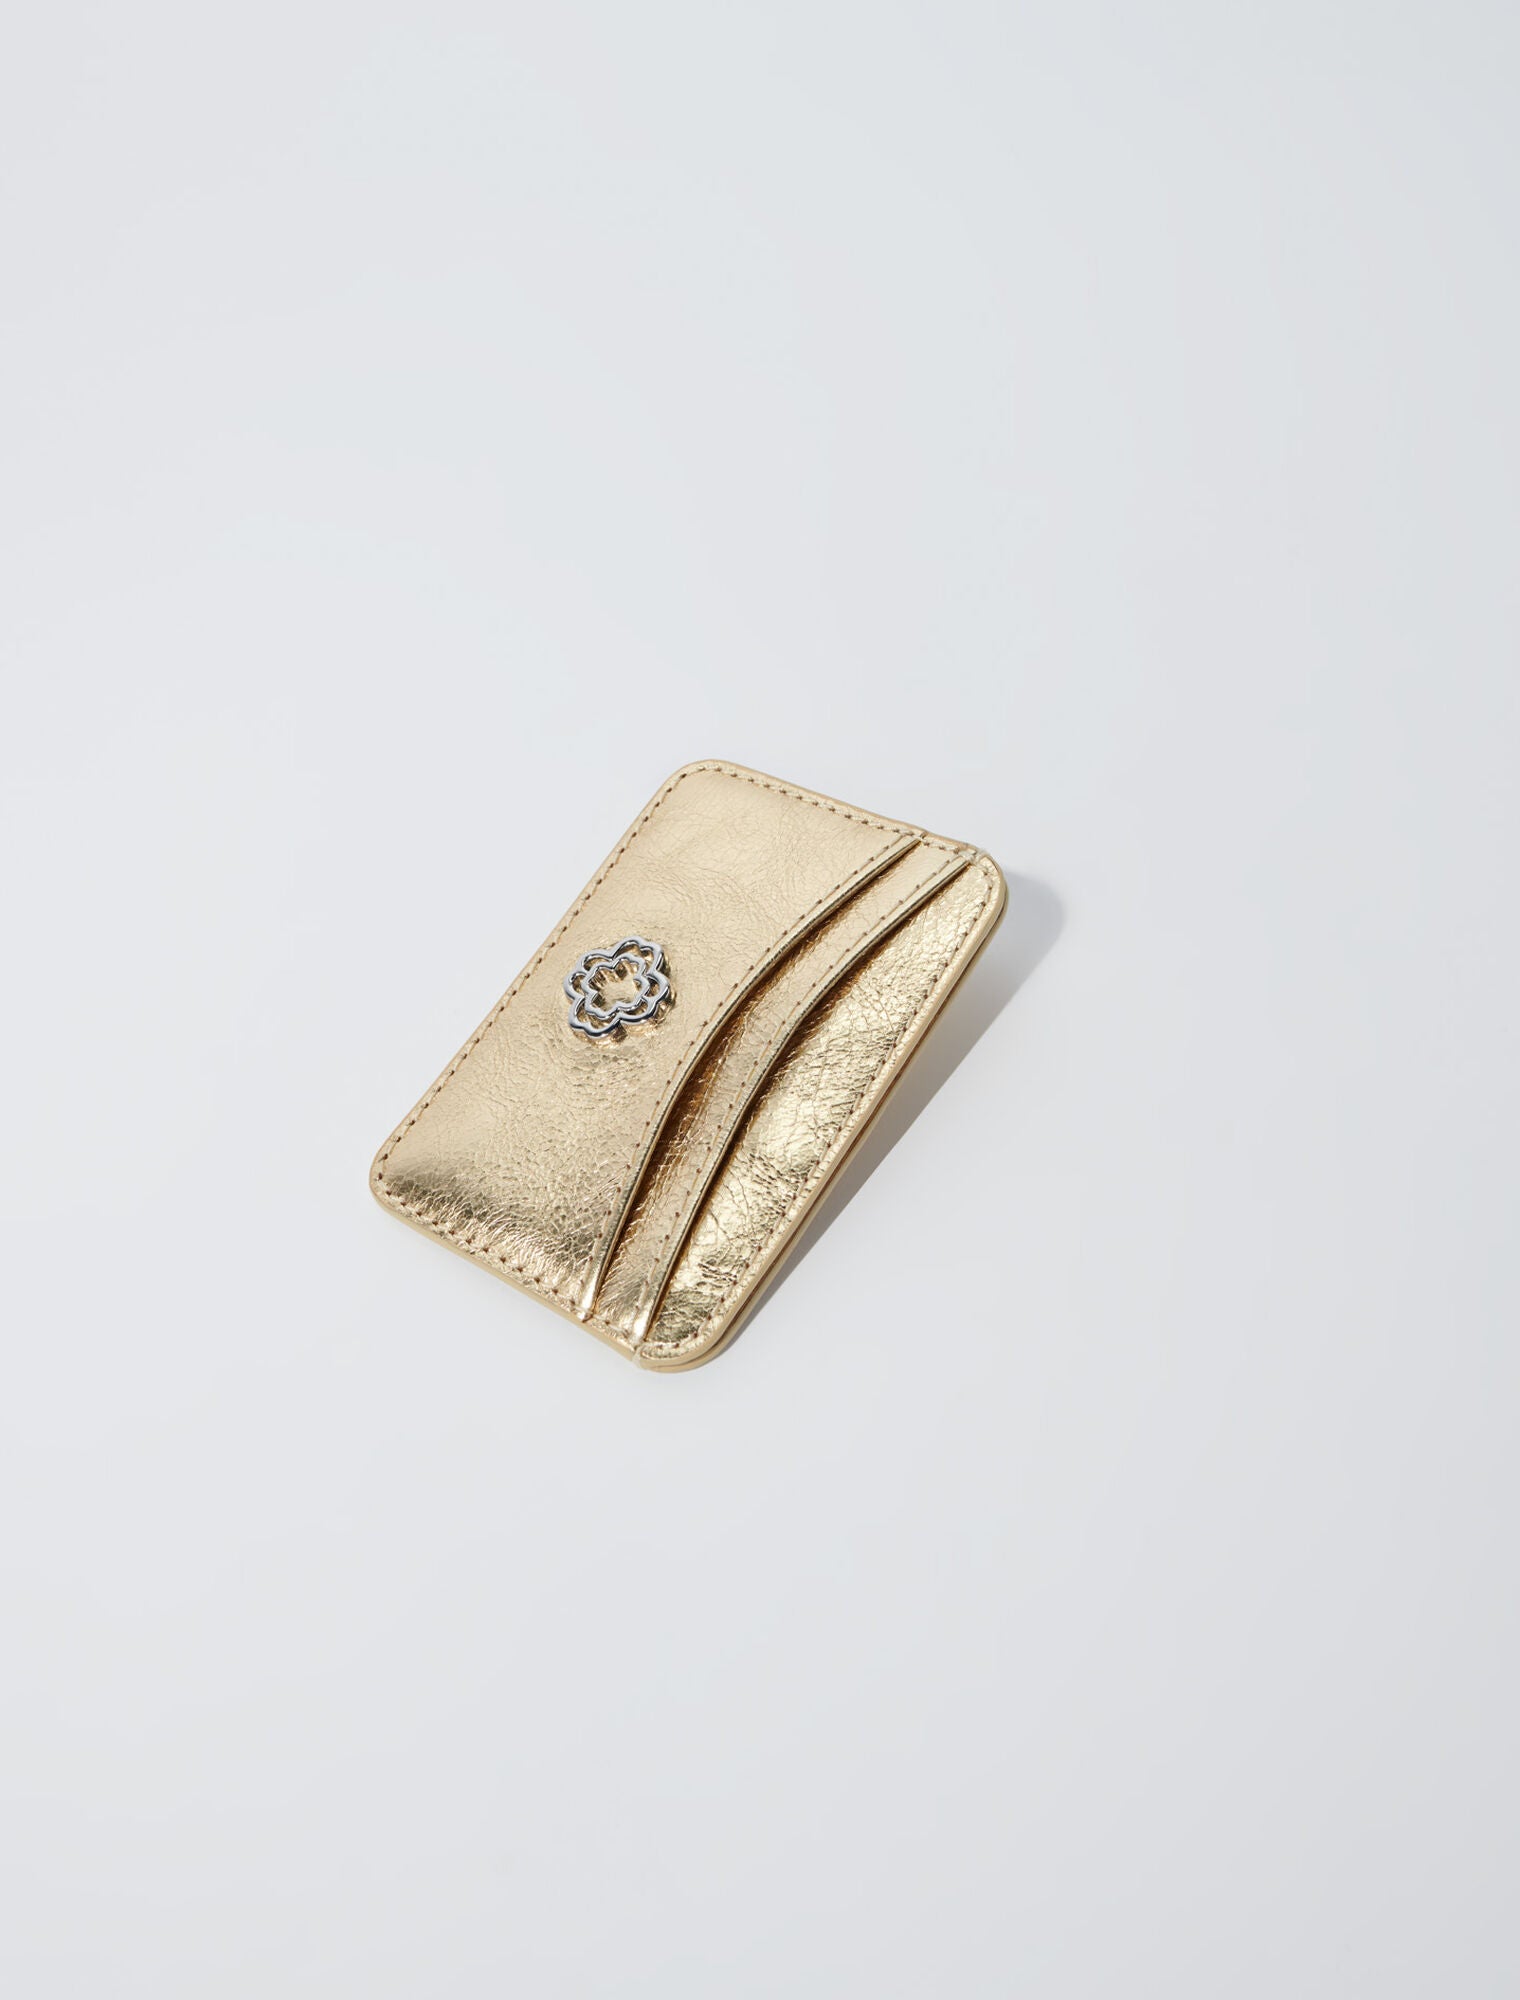 Gold-Crackled leather card holder